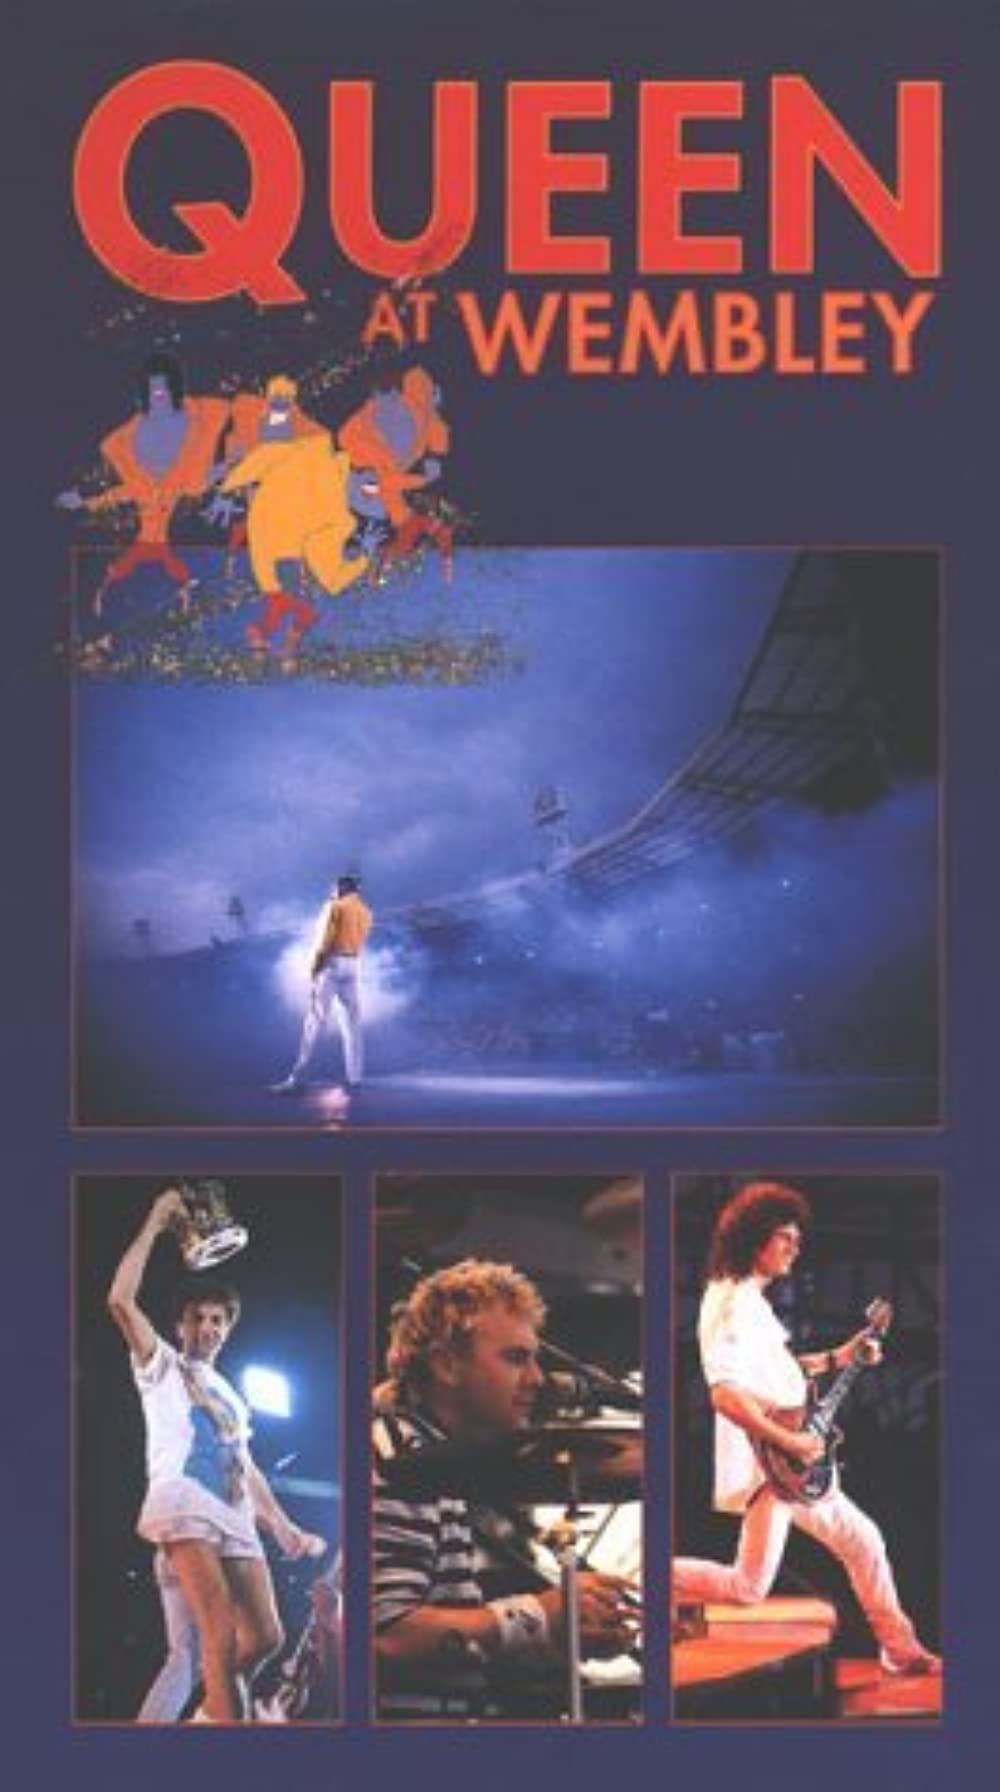 Filmbeschreibung zu ABBA - Live at Wembley